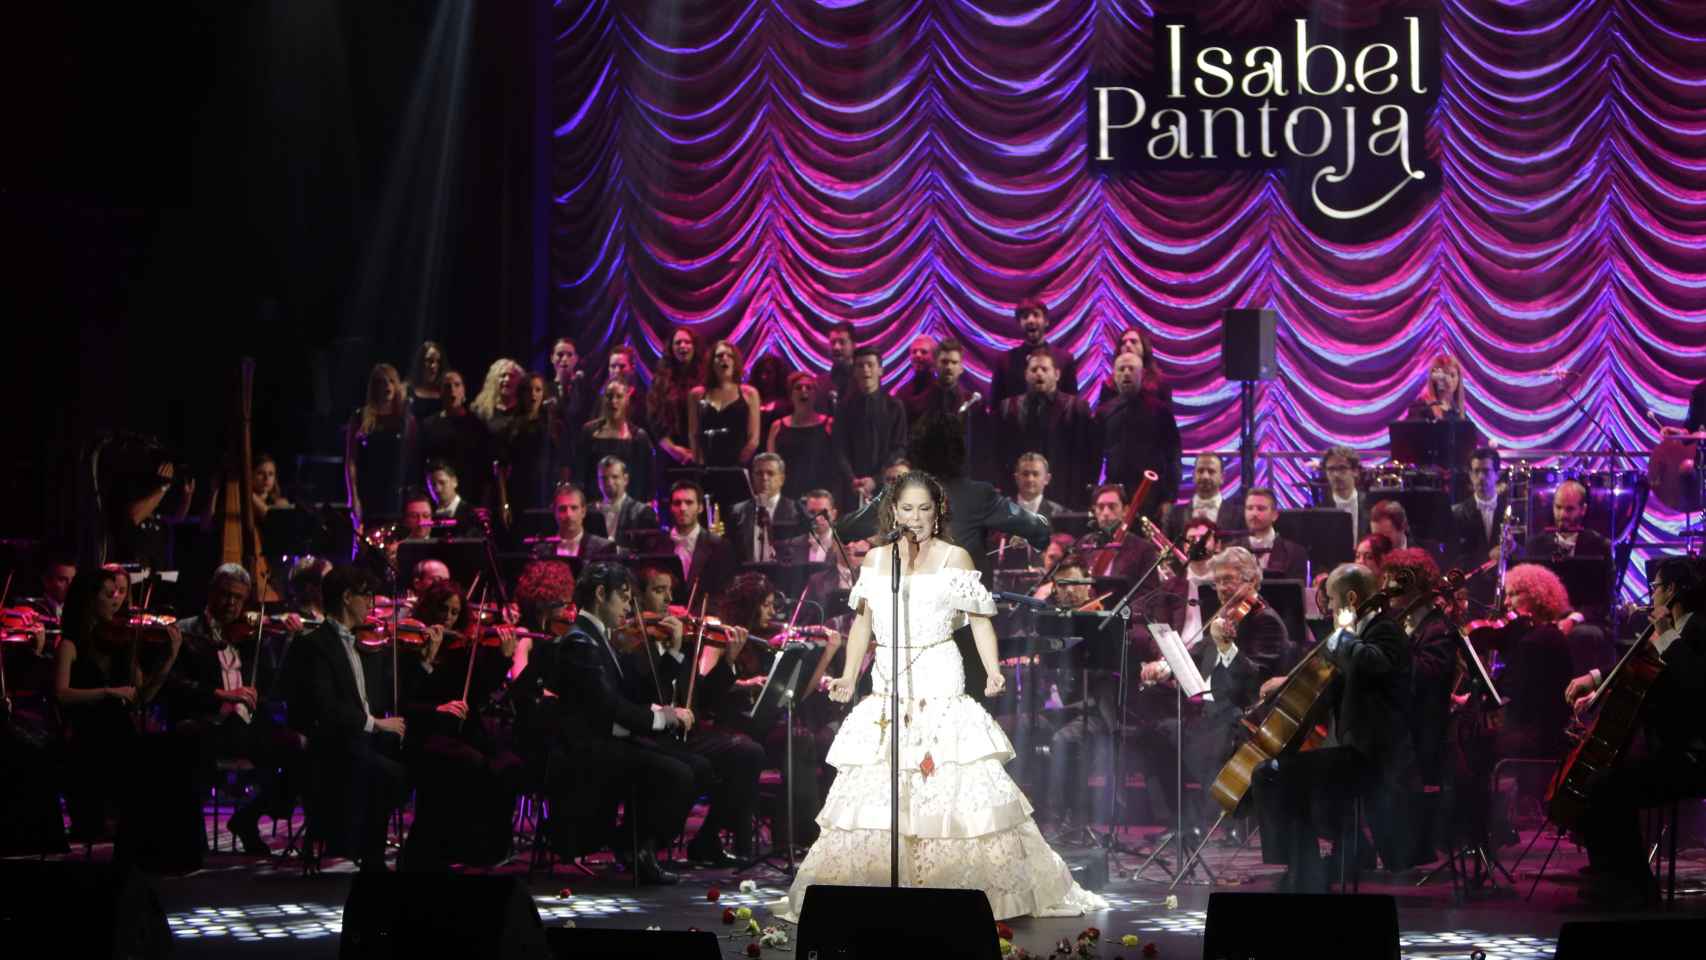 Pantoja estuvo acompañada por 83 músicos sobre el escenario